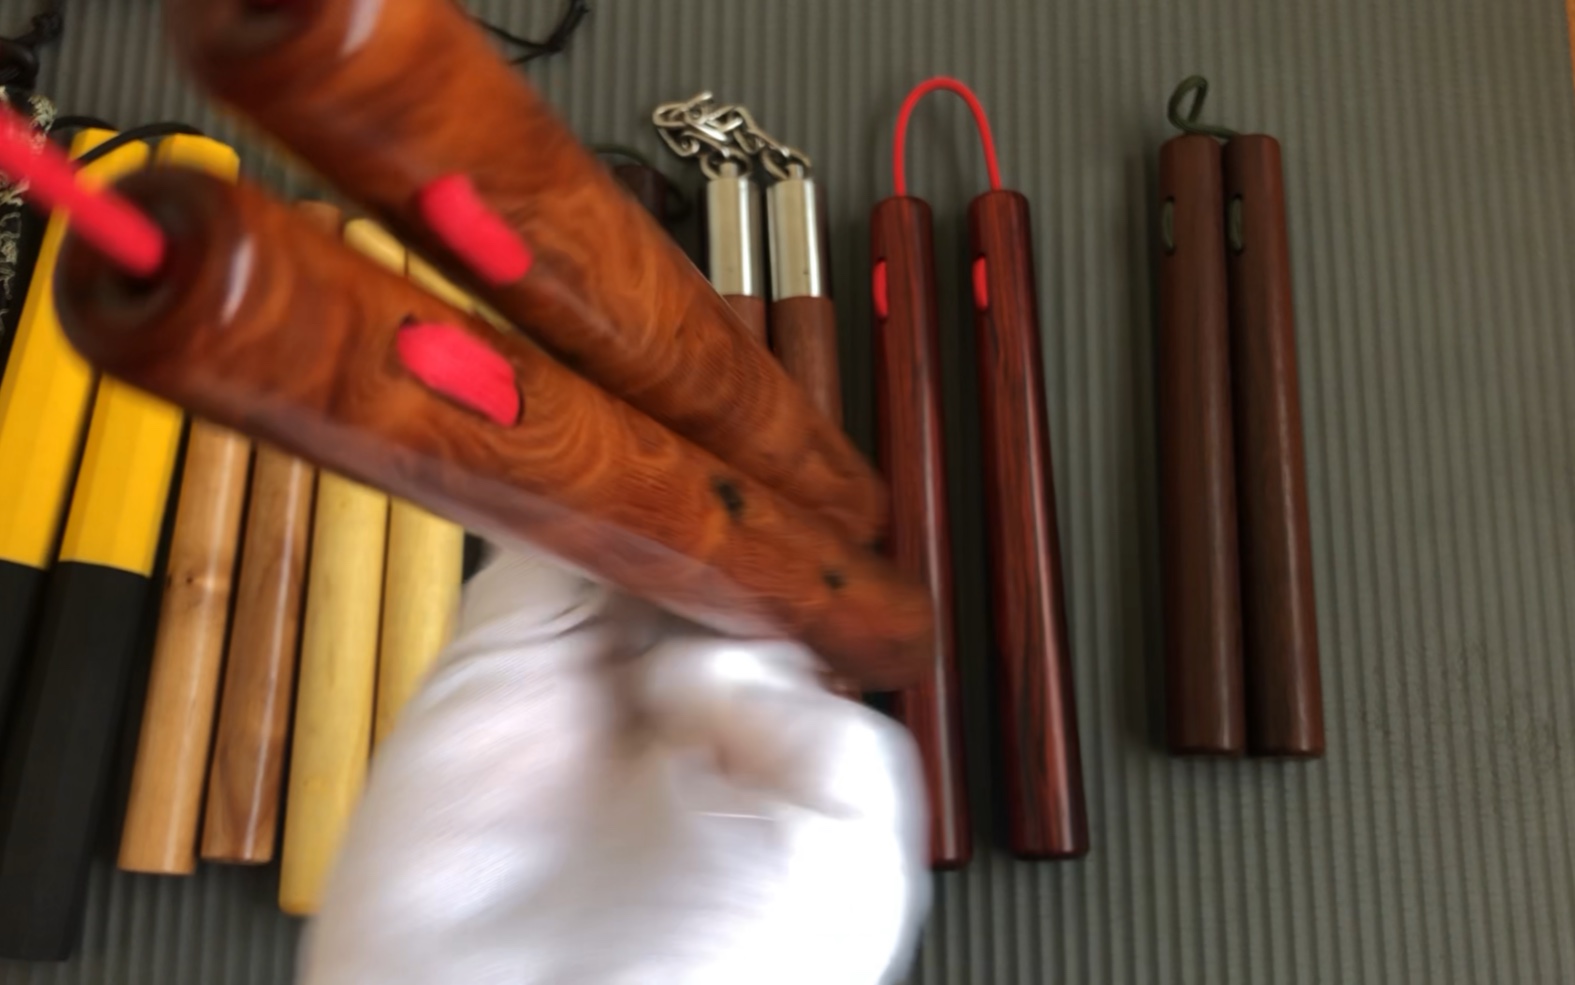 展示下订做的印度小叶紫檀双节棍和其他实木双节棍以及关于如何选择木棍的杂谈